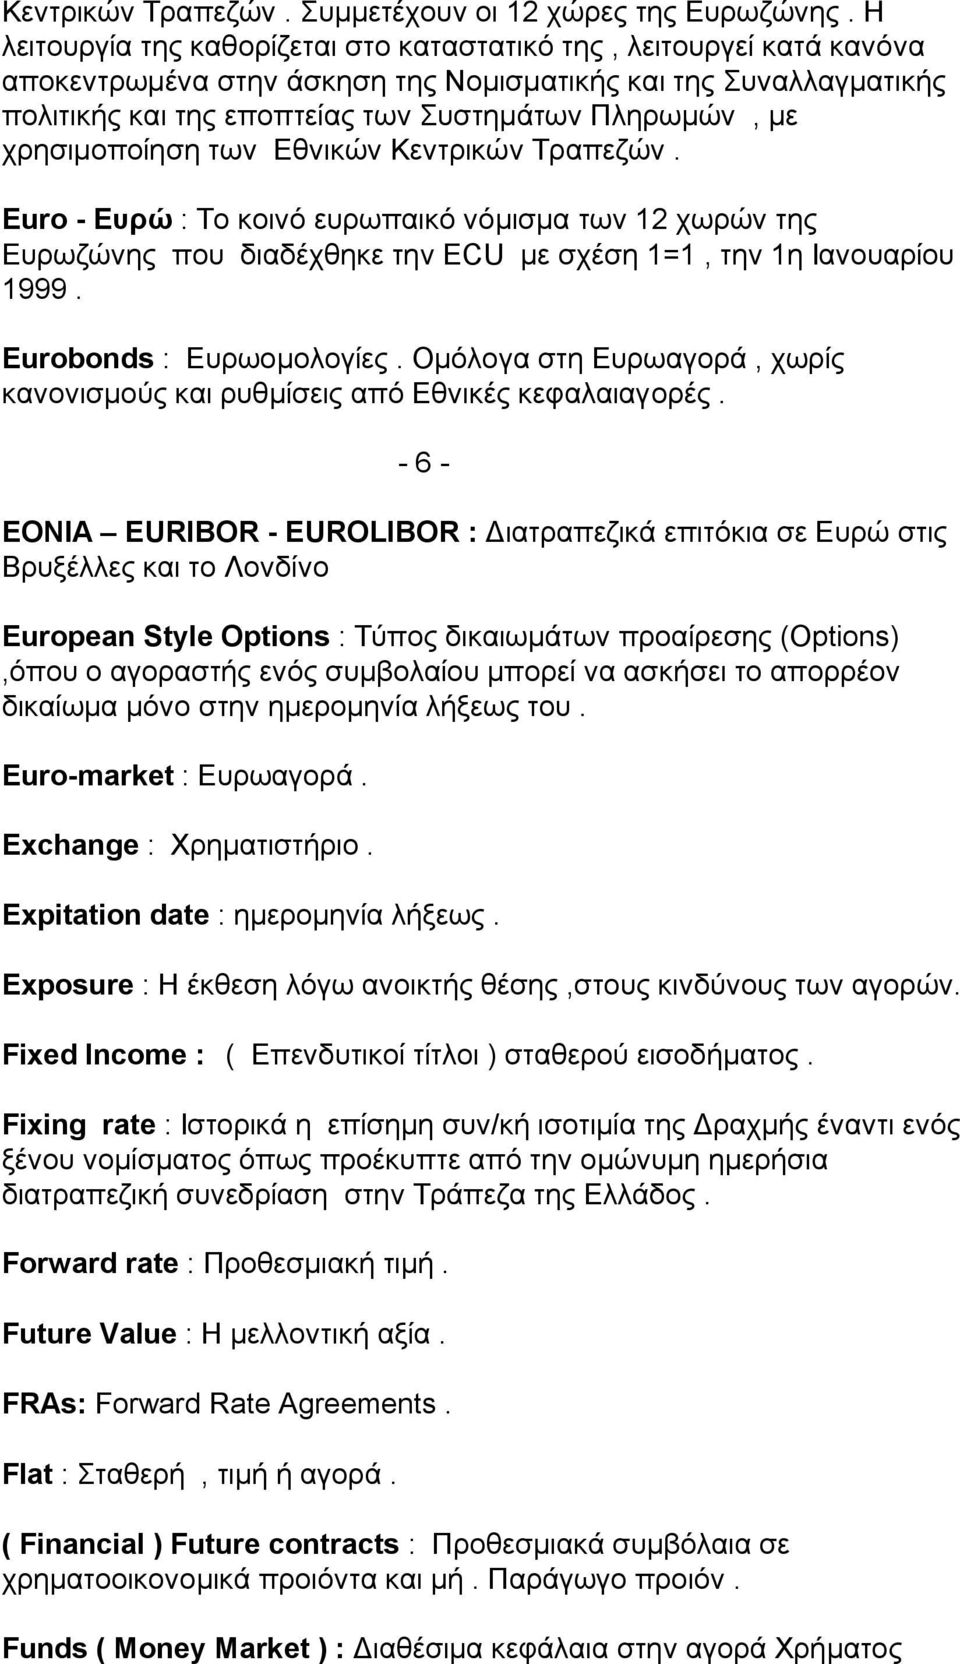 χρησιμοποίηση των Εθνικών Κεντρικών Τραπεζών. Εuro - Ευρώ : Το κοινό ευρωπαικό νόμισμα των 12 χωρών της Ευρωζώνης που διαδέχθηκε την ECU με σχέση 1=1, την 1η Ιανουαρίου 1999.